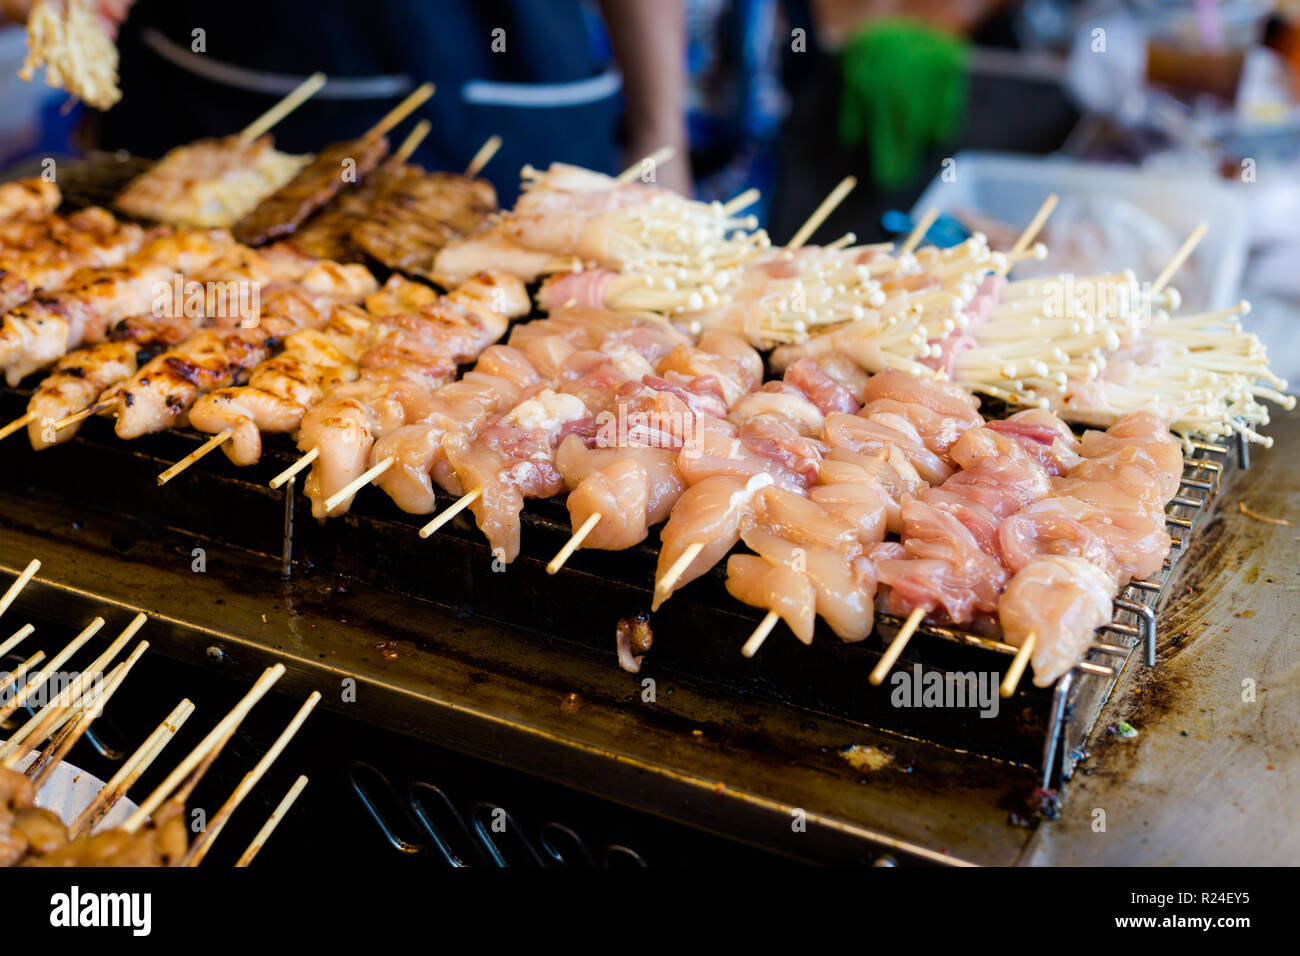 Asiatique frais épicé brochettes de poulet aux champignons et à l'aiguille barbecue le marché local. La cuisine thaïlandaise traditionnelle faite d'ingrédients frais. Banque D'Images